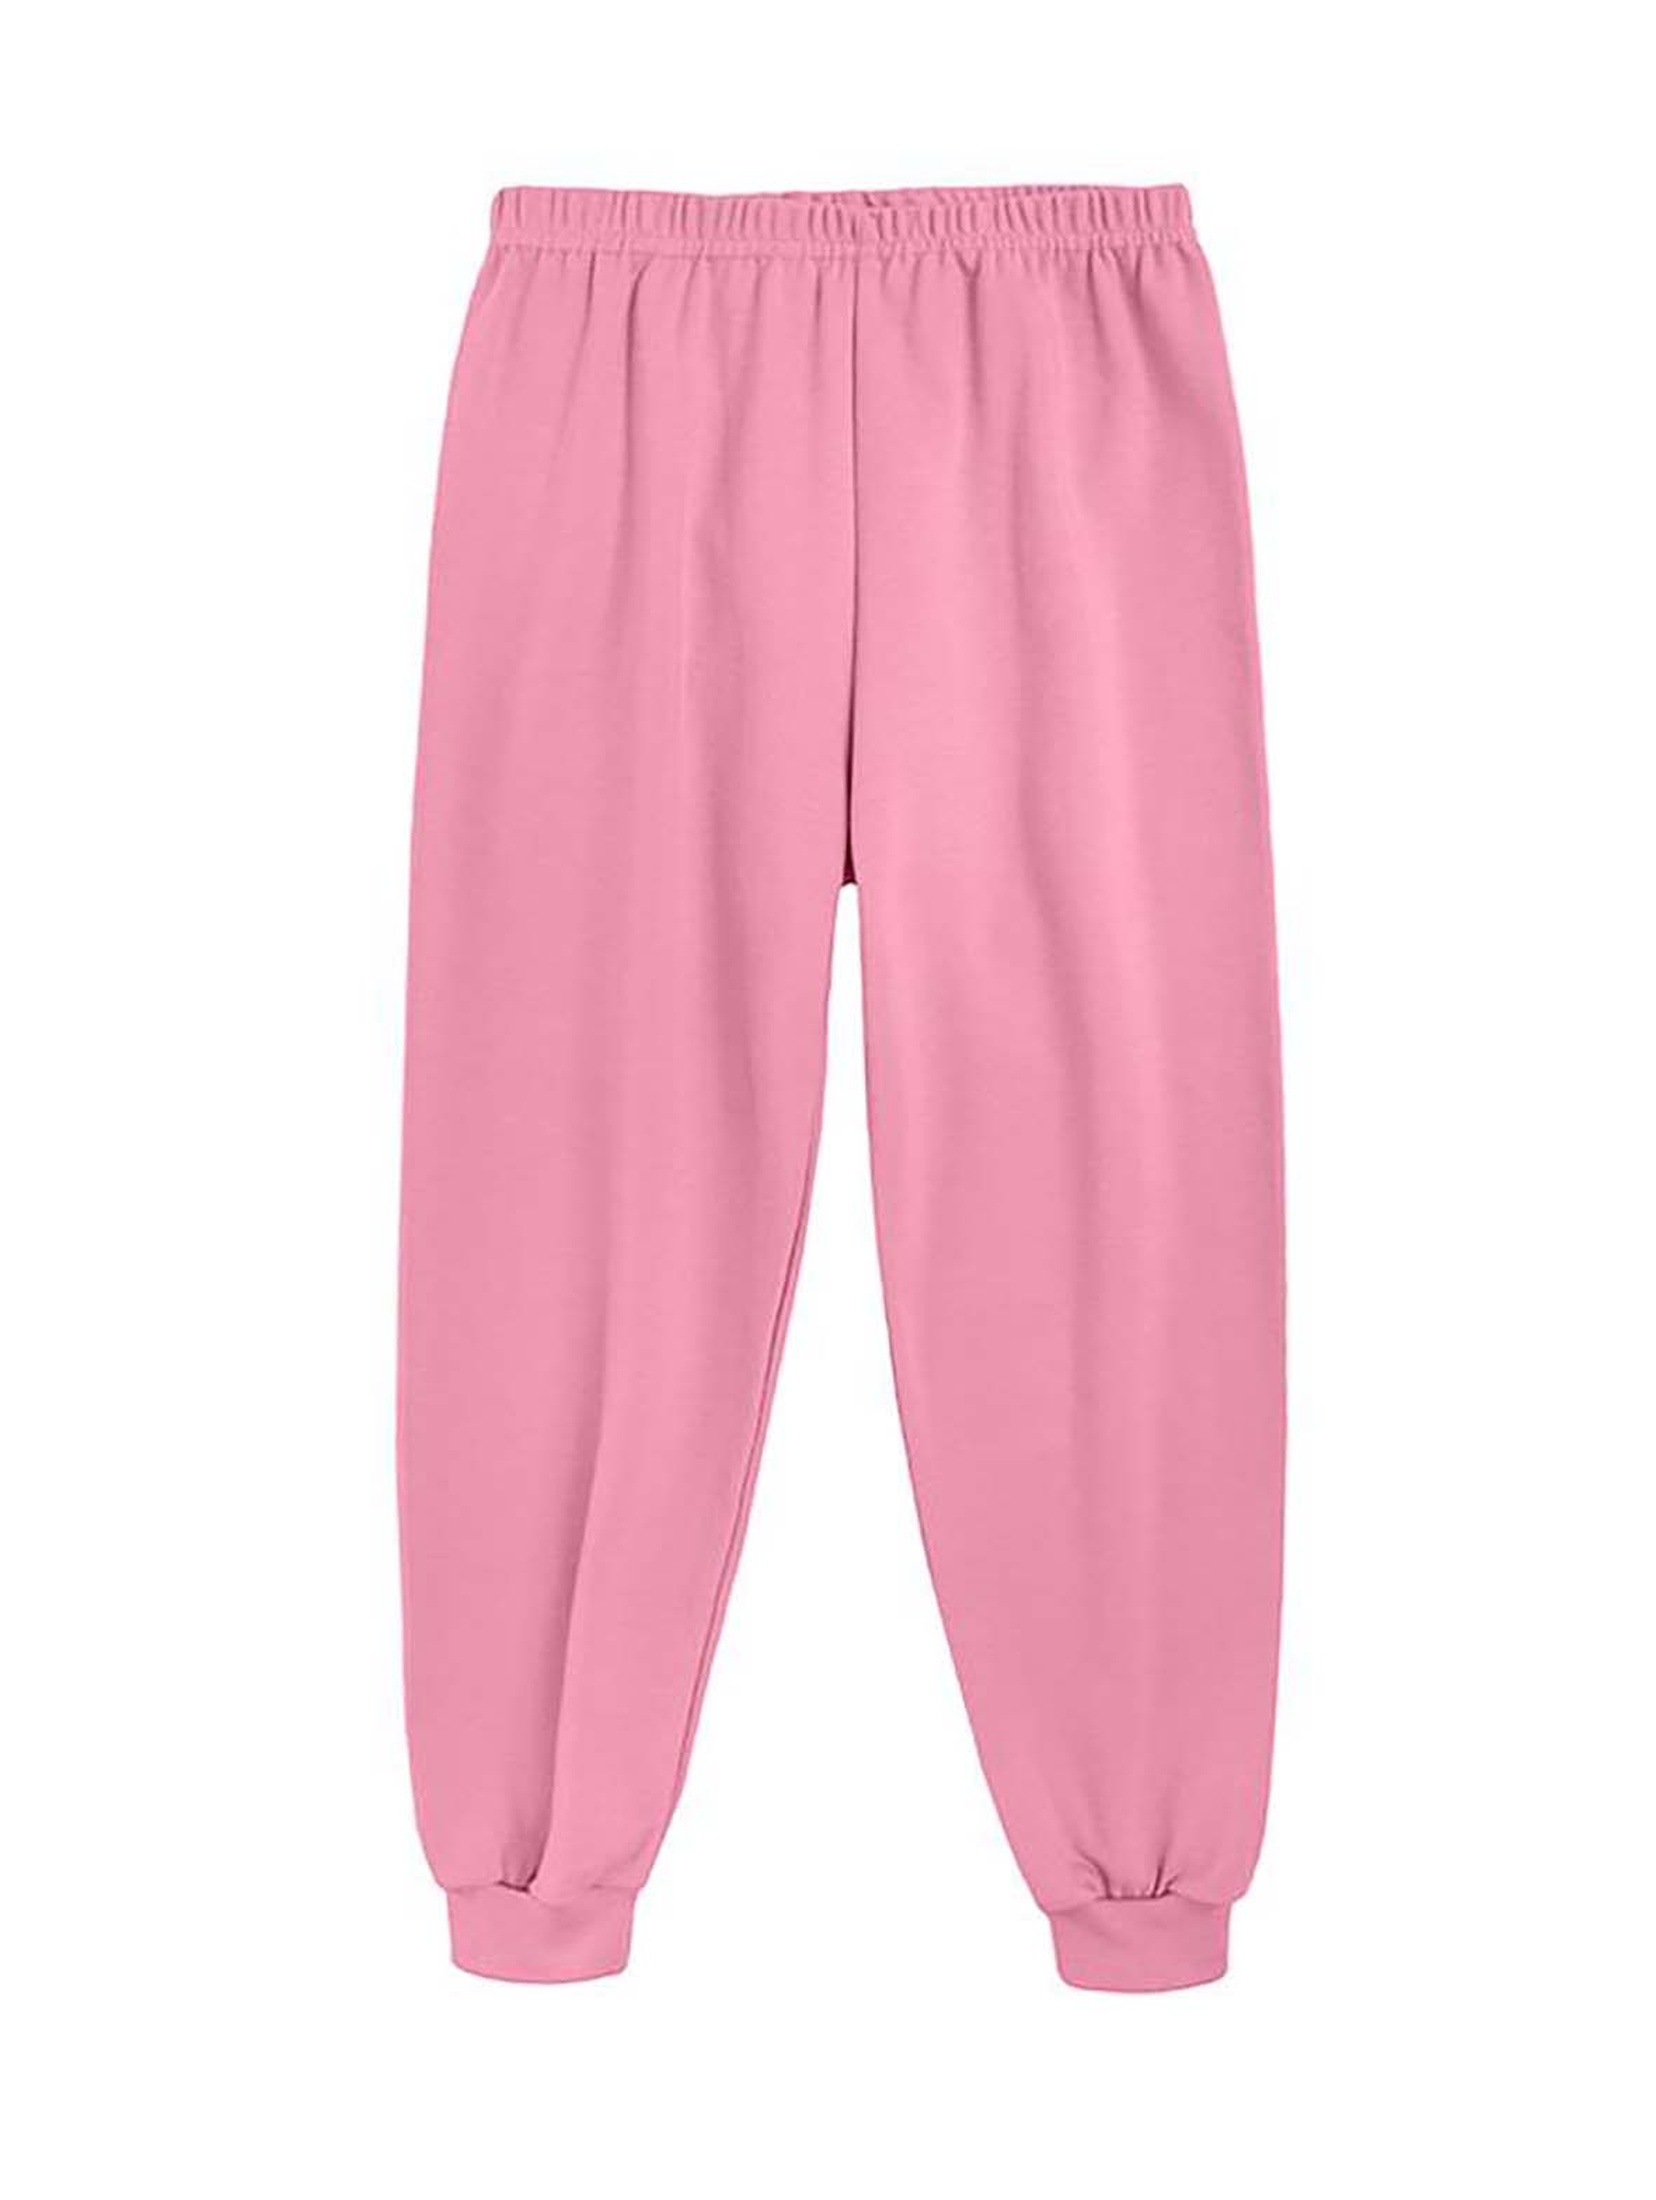 Ciepła dziewczęca piżama różowa Tup Tup- miś